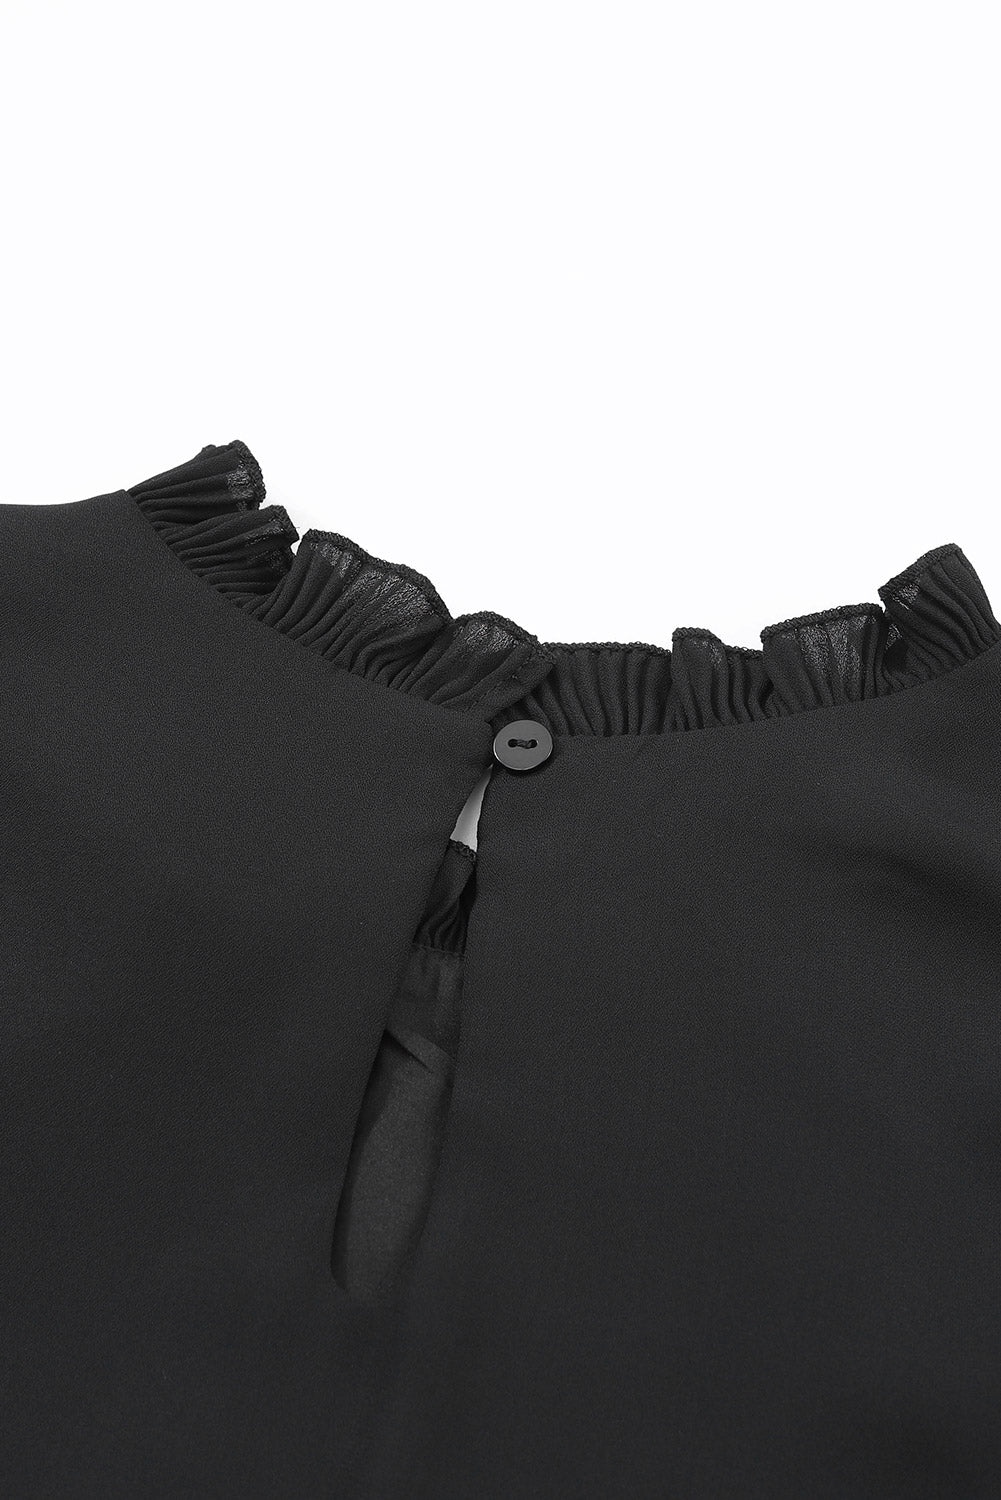 Črna bluza z naborki in naborki na zadnji strani z gumbi